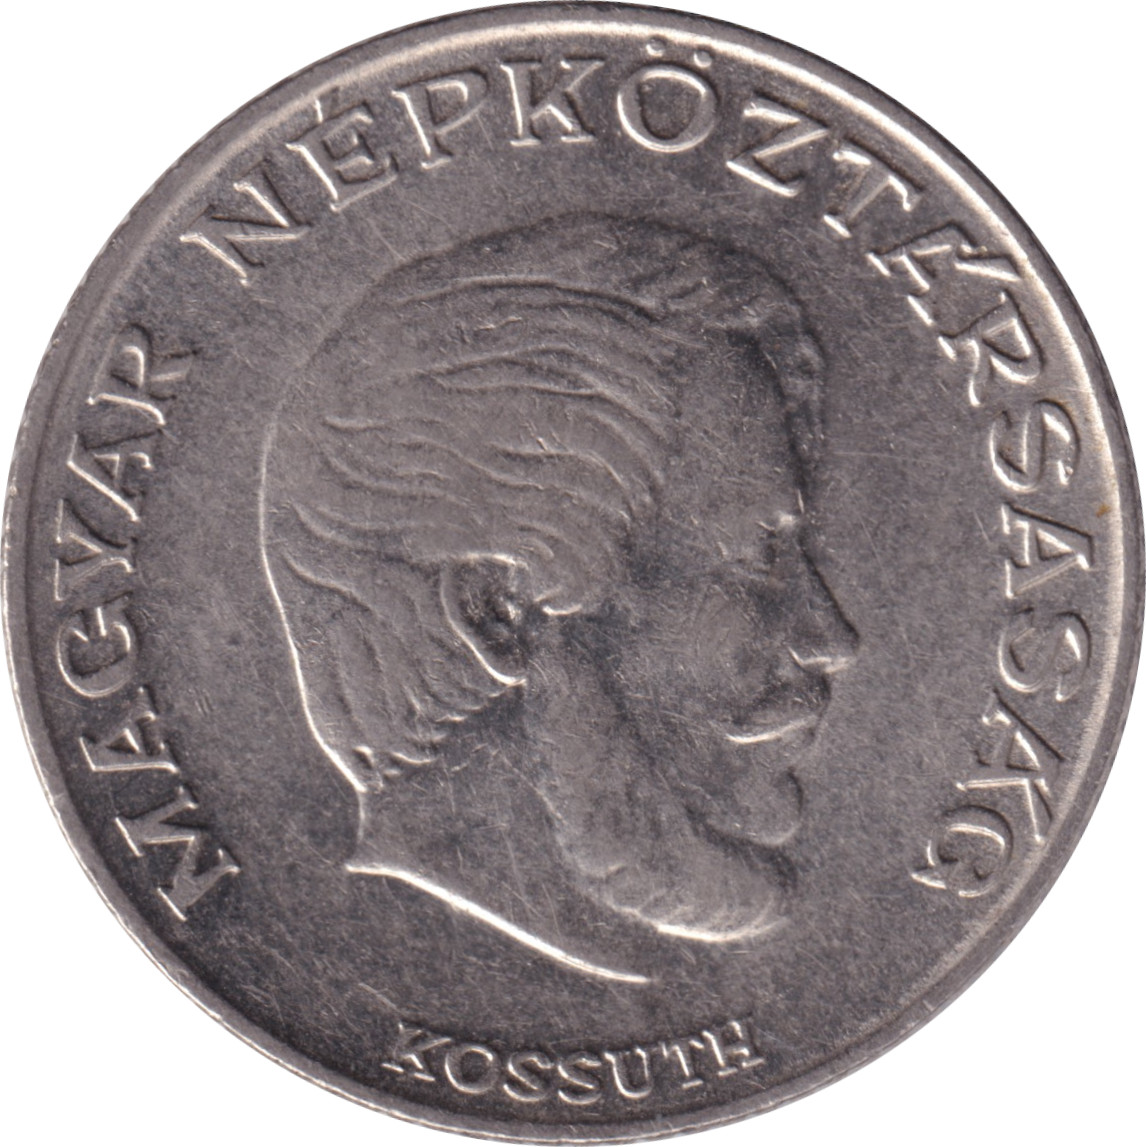 5 forint - Lajos Kossuth - Petit blason démocrate